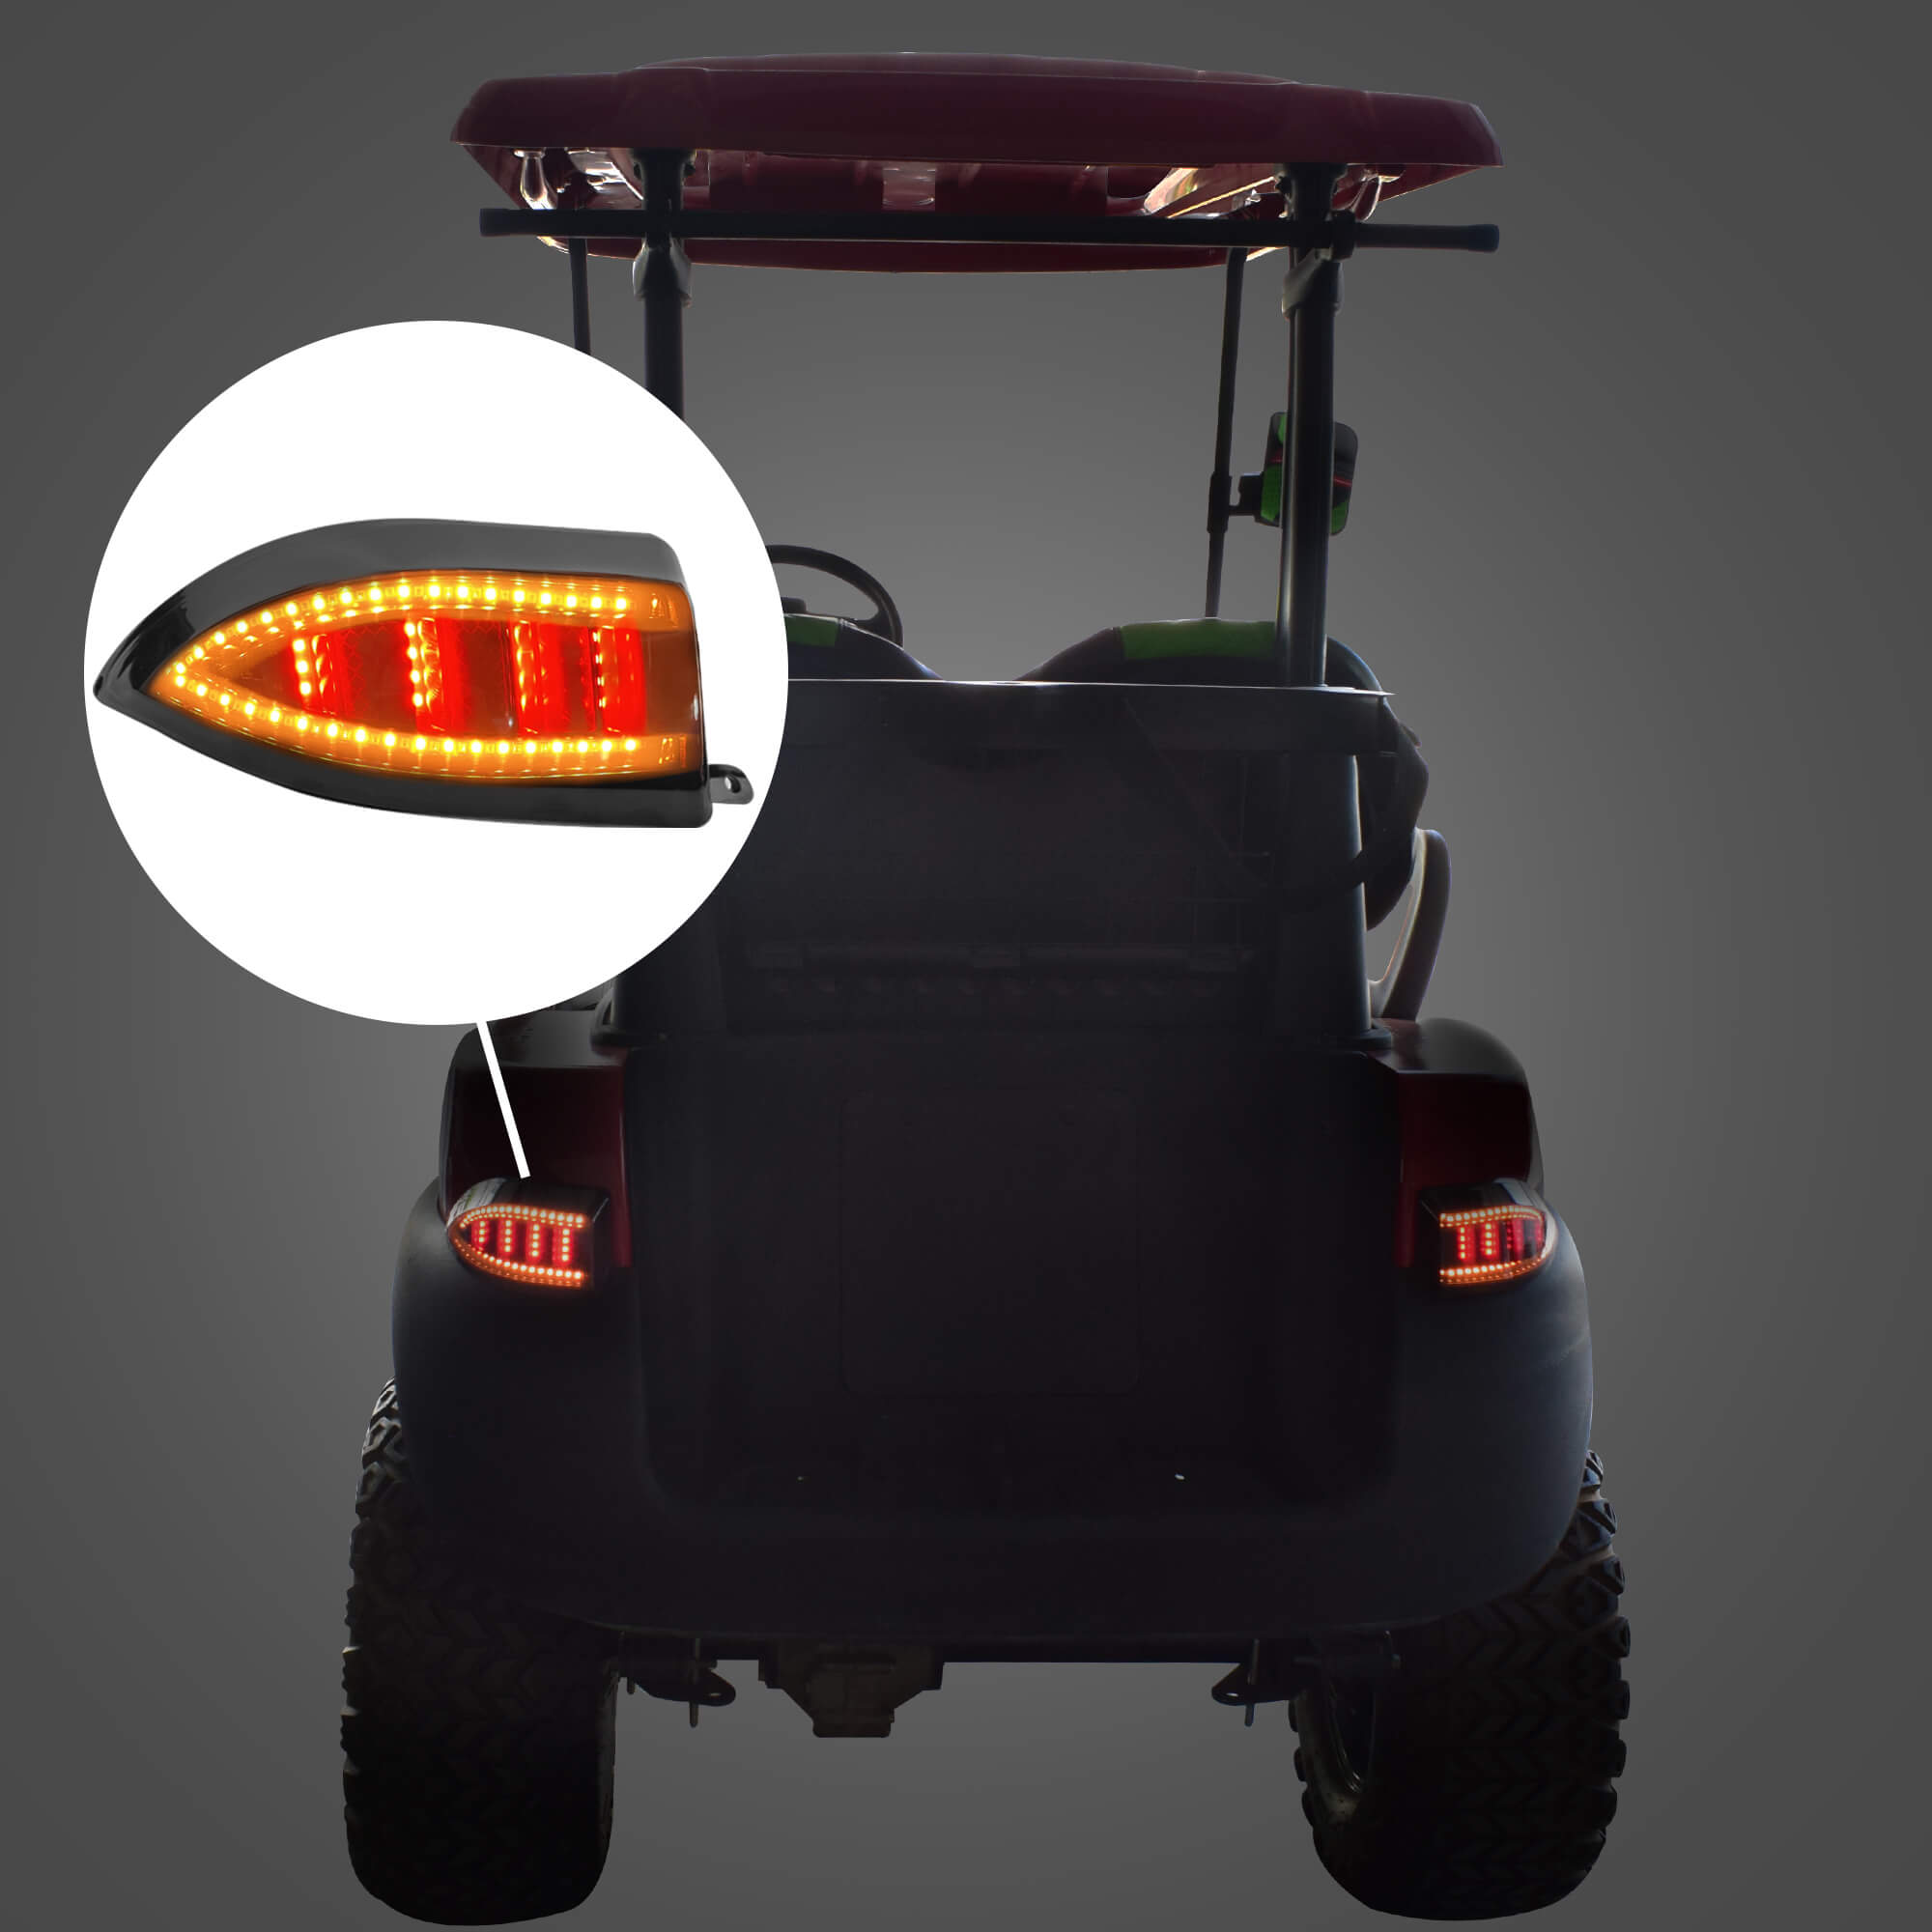 Buy LED Light Kit for Golf Carts